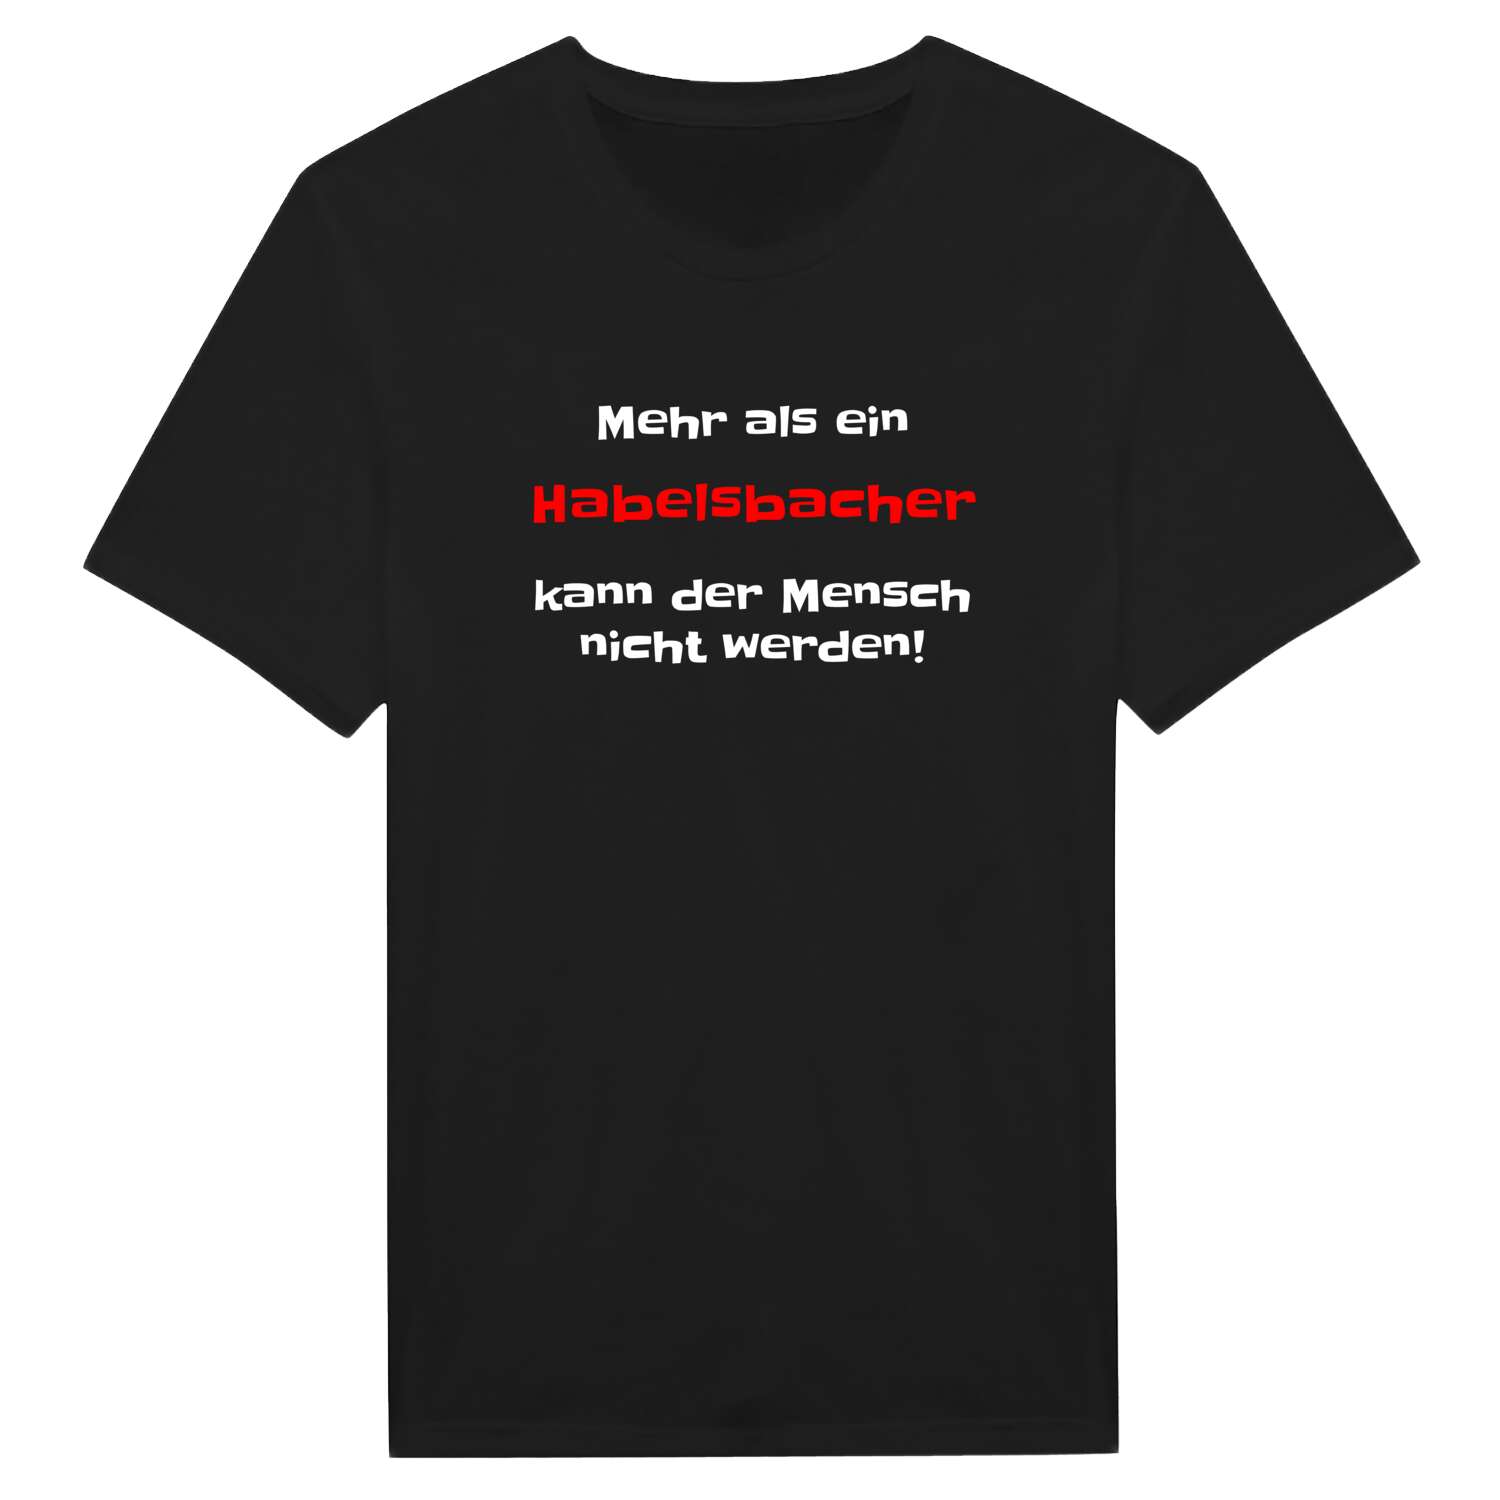 Habelsbach T-Shirt »Mehr als ein«